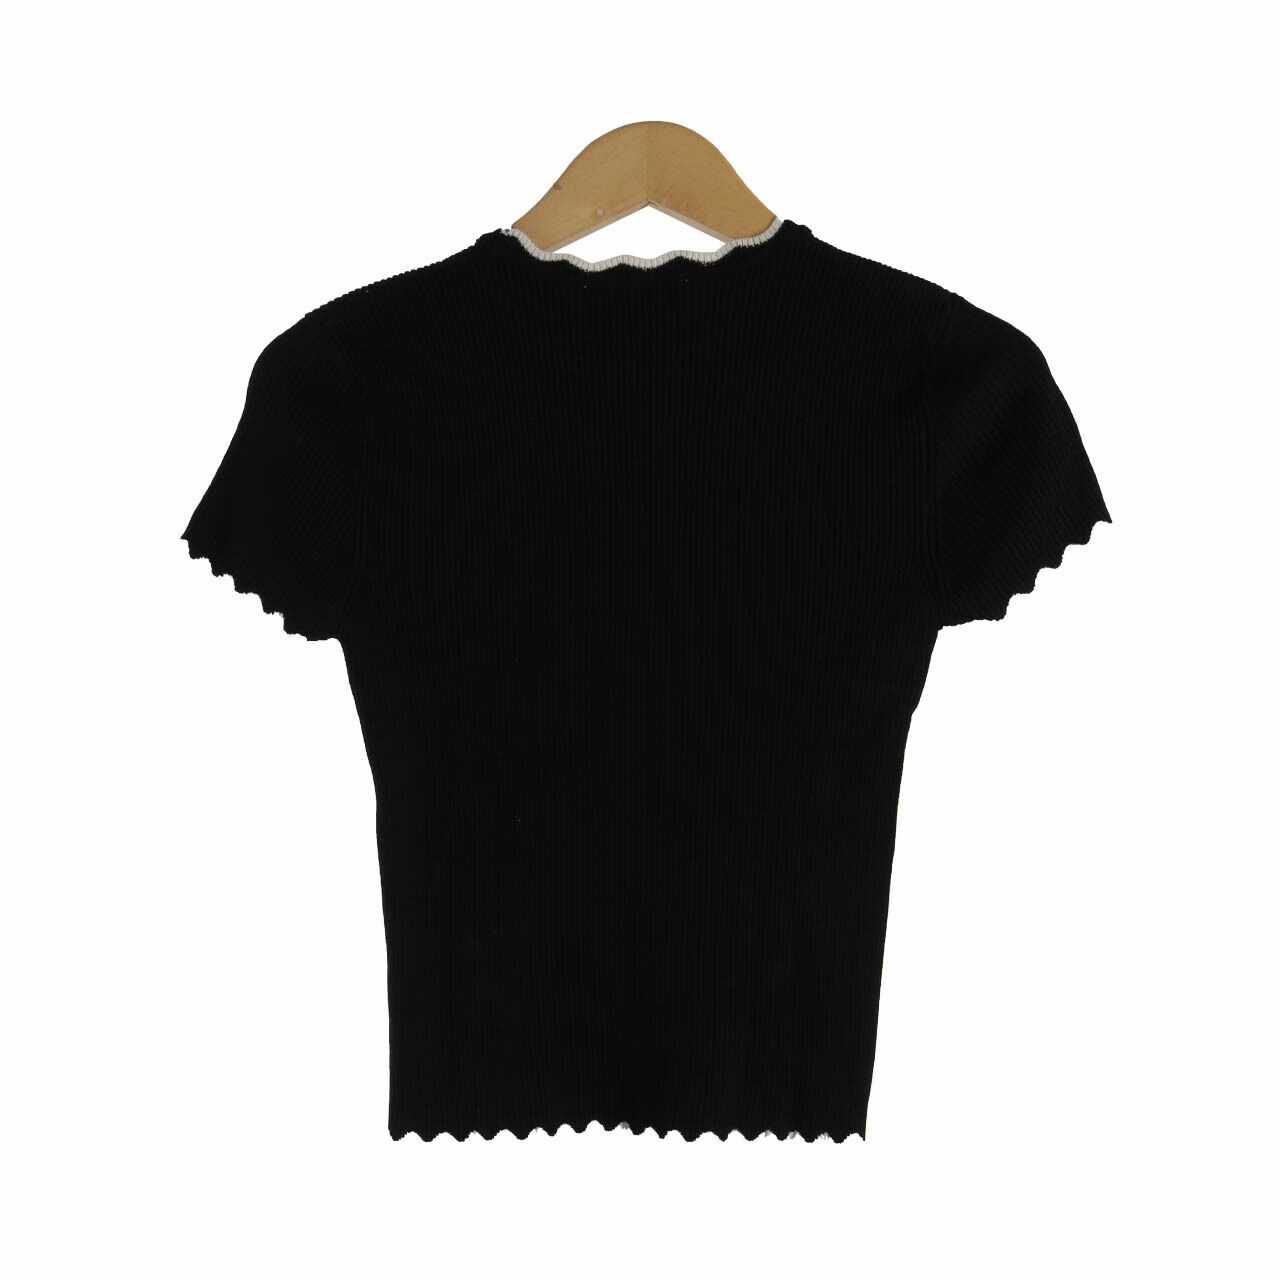 Zara Knit Black Blouse